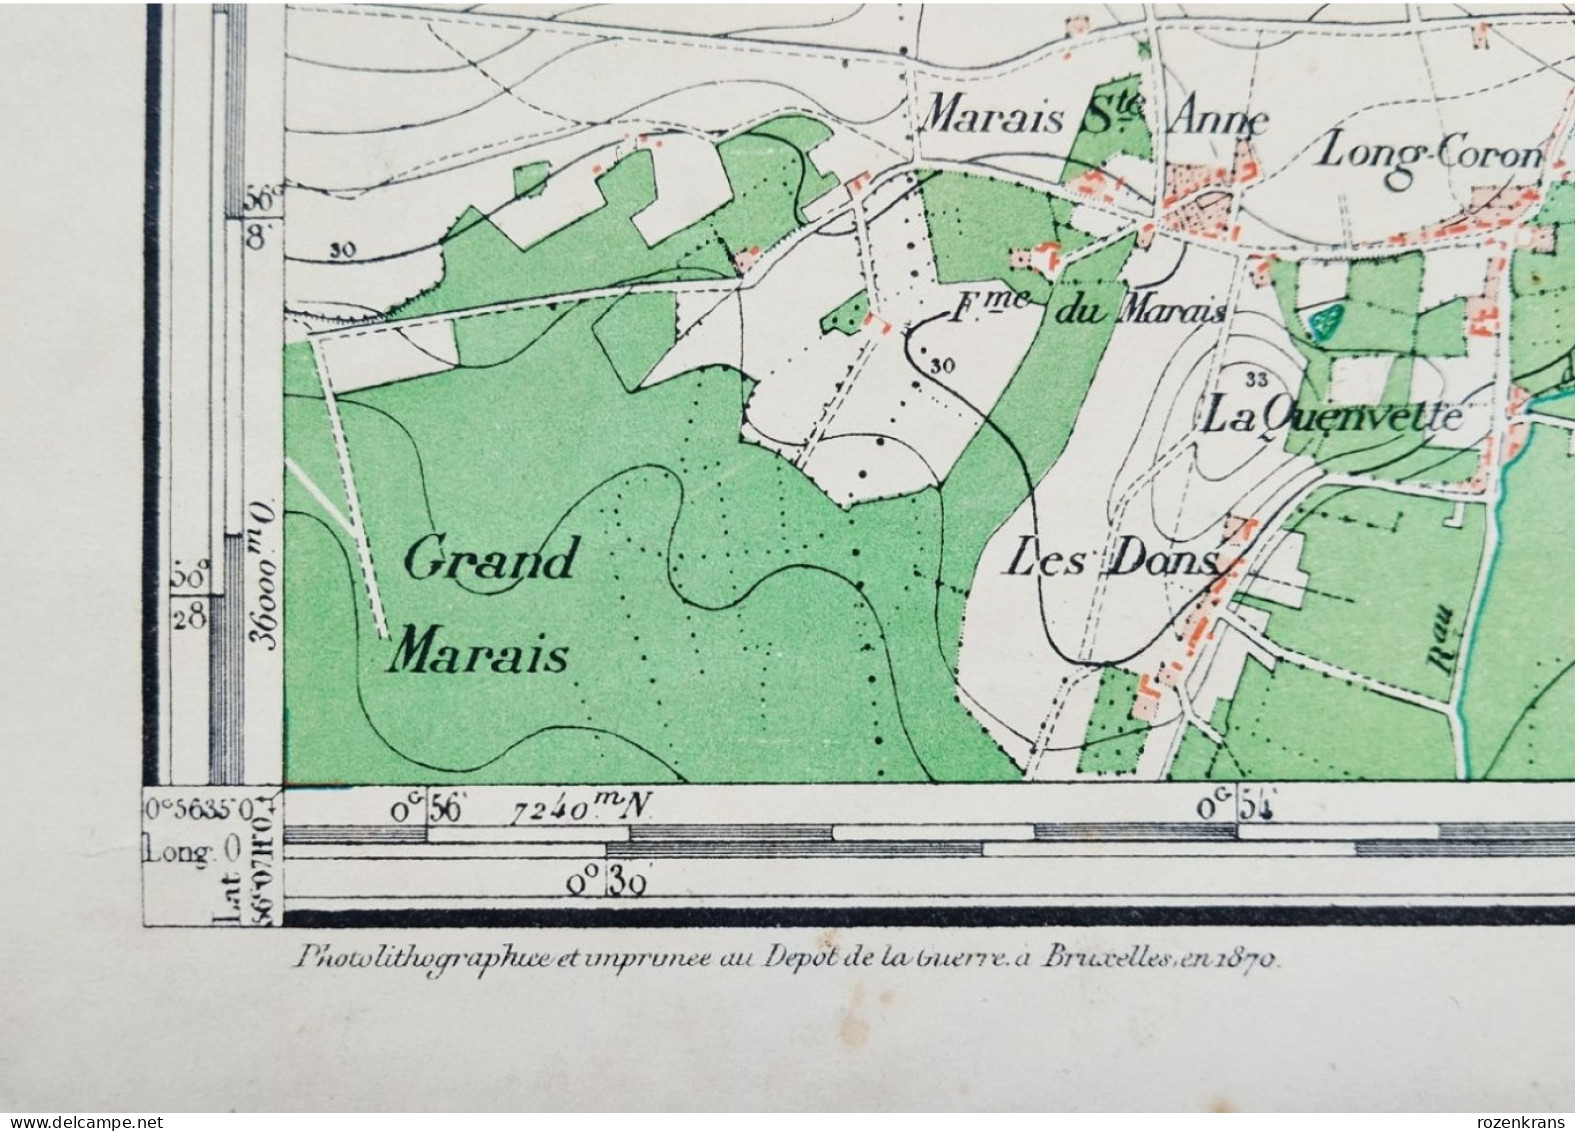 Carte topographique toilée militaire STAFKAART 1870 JURBISE Erbaut Maisieres Nimy Ghlin Verrerie Masnuy St Jean Pierre